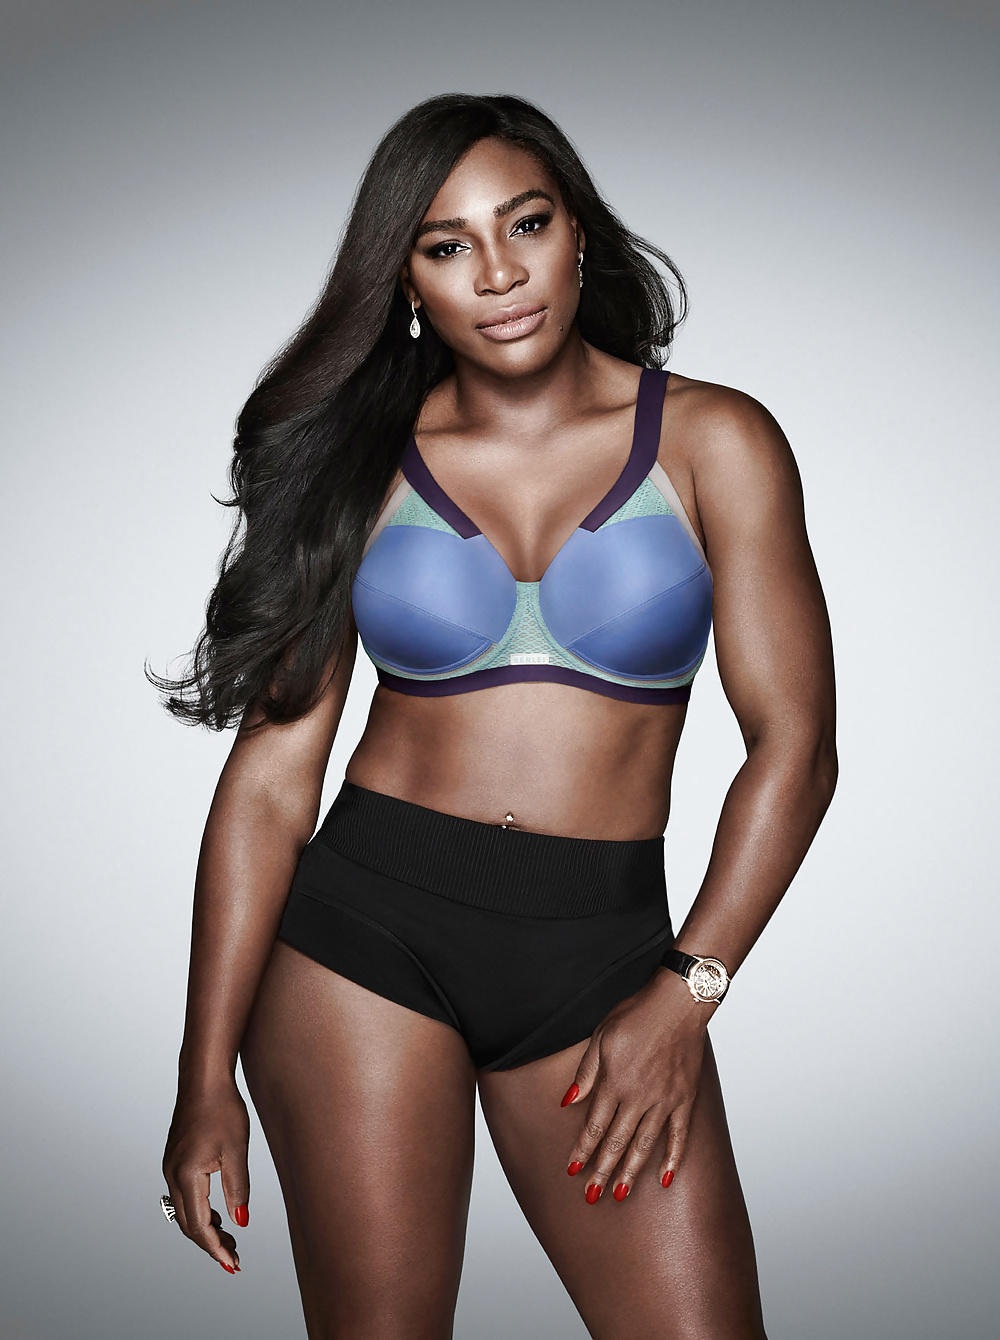 Serena_WilliamsSo_Hot (9/21)